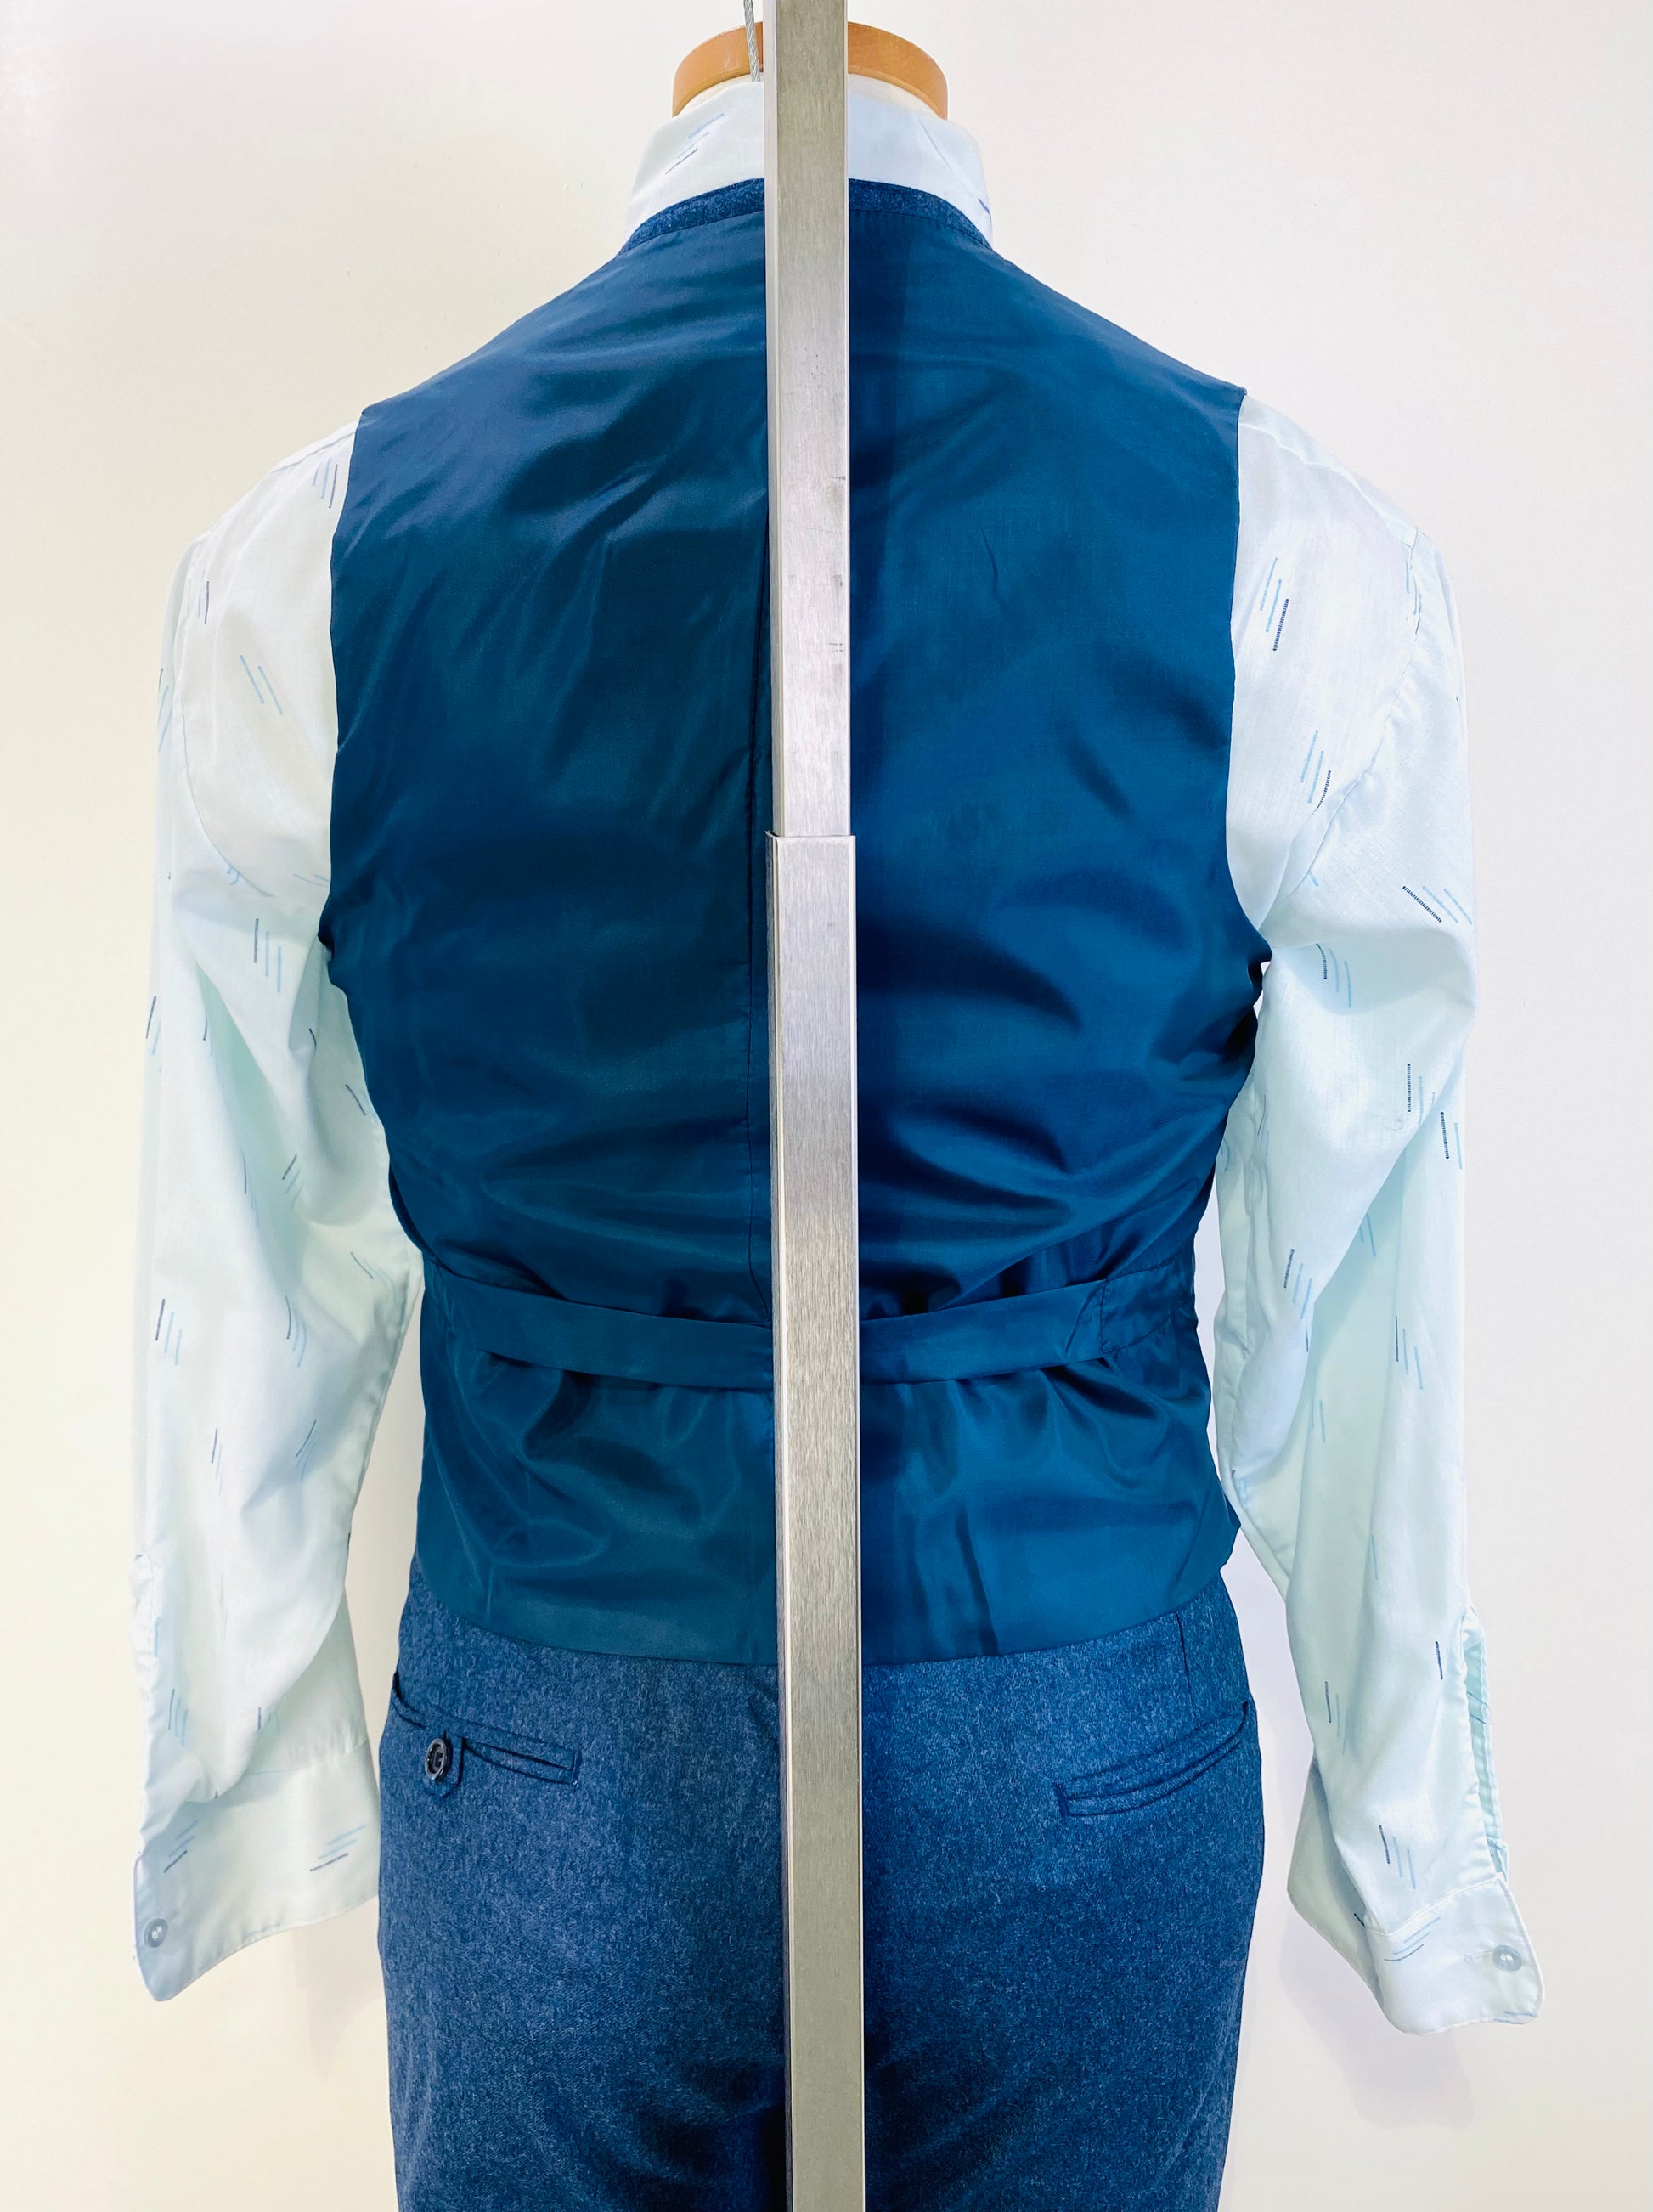 1970s Vintage Deadstock Men's Suit, Blue Wool 3-Piece Suit, Kent Tailoring, NOS